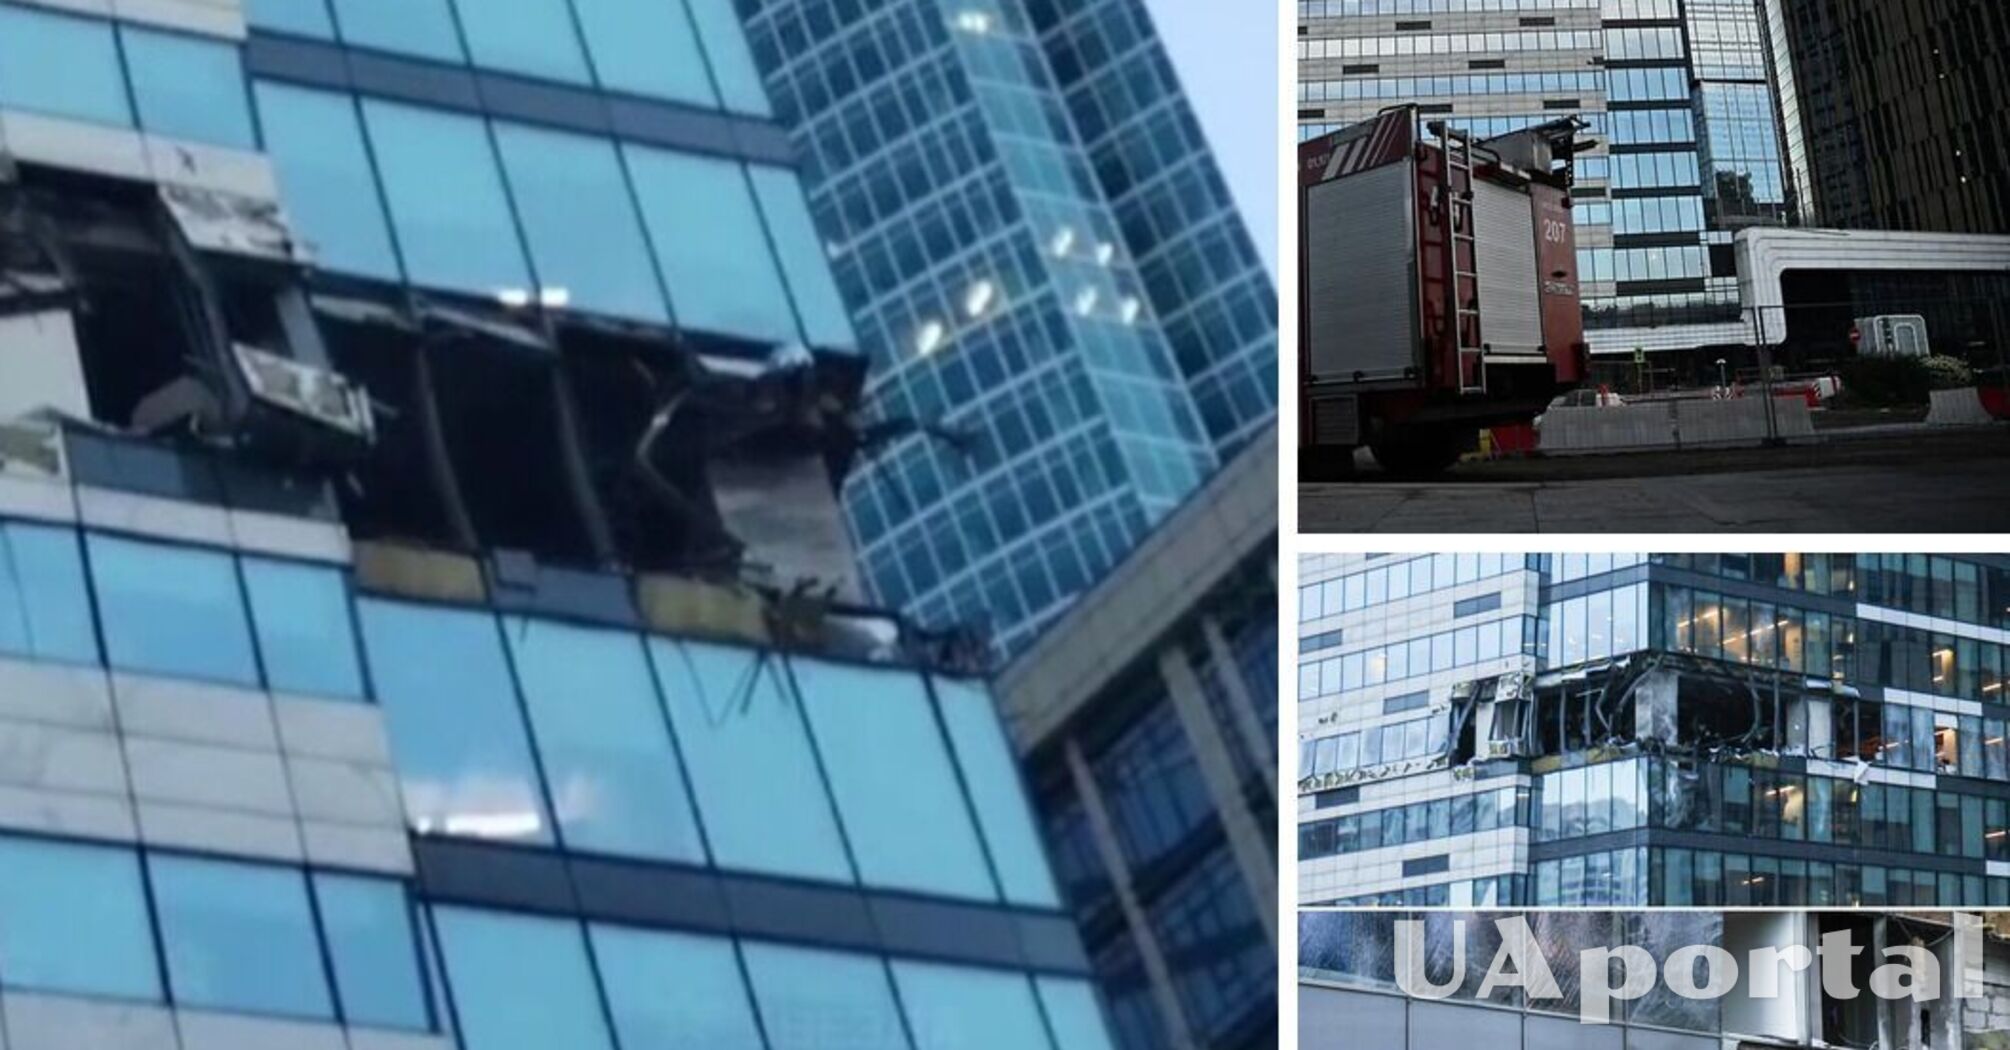 Атака беспилотников по Москве: в 50-этажном БЦ был взрыв, вылетели окна (фото, видео)